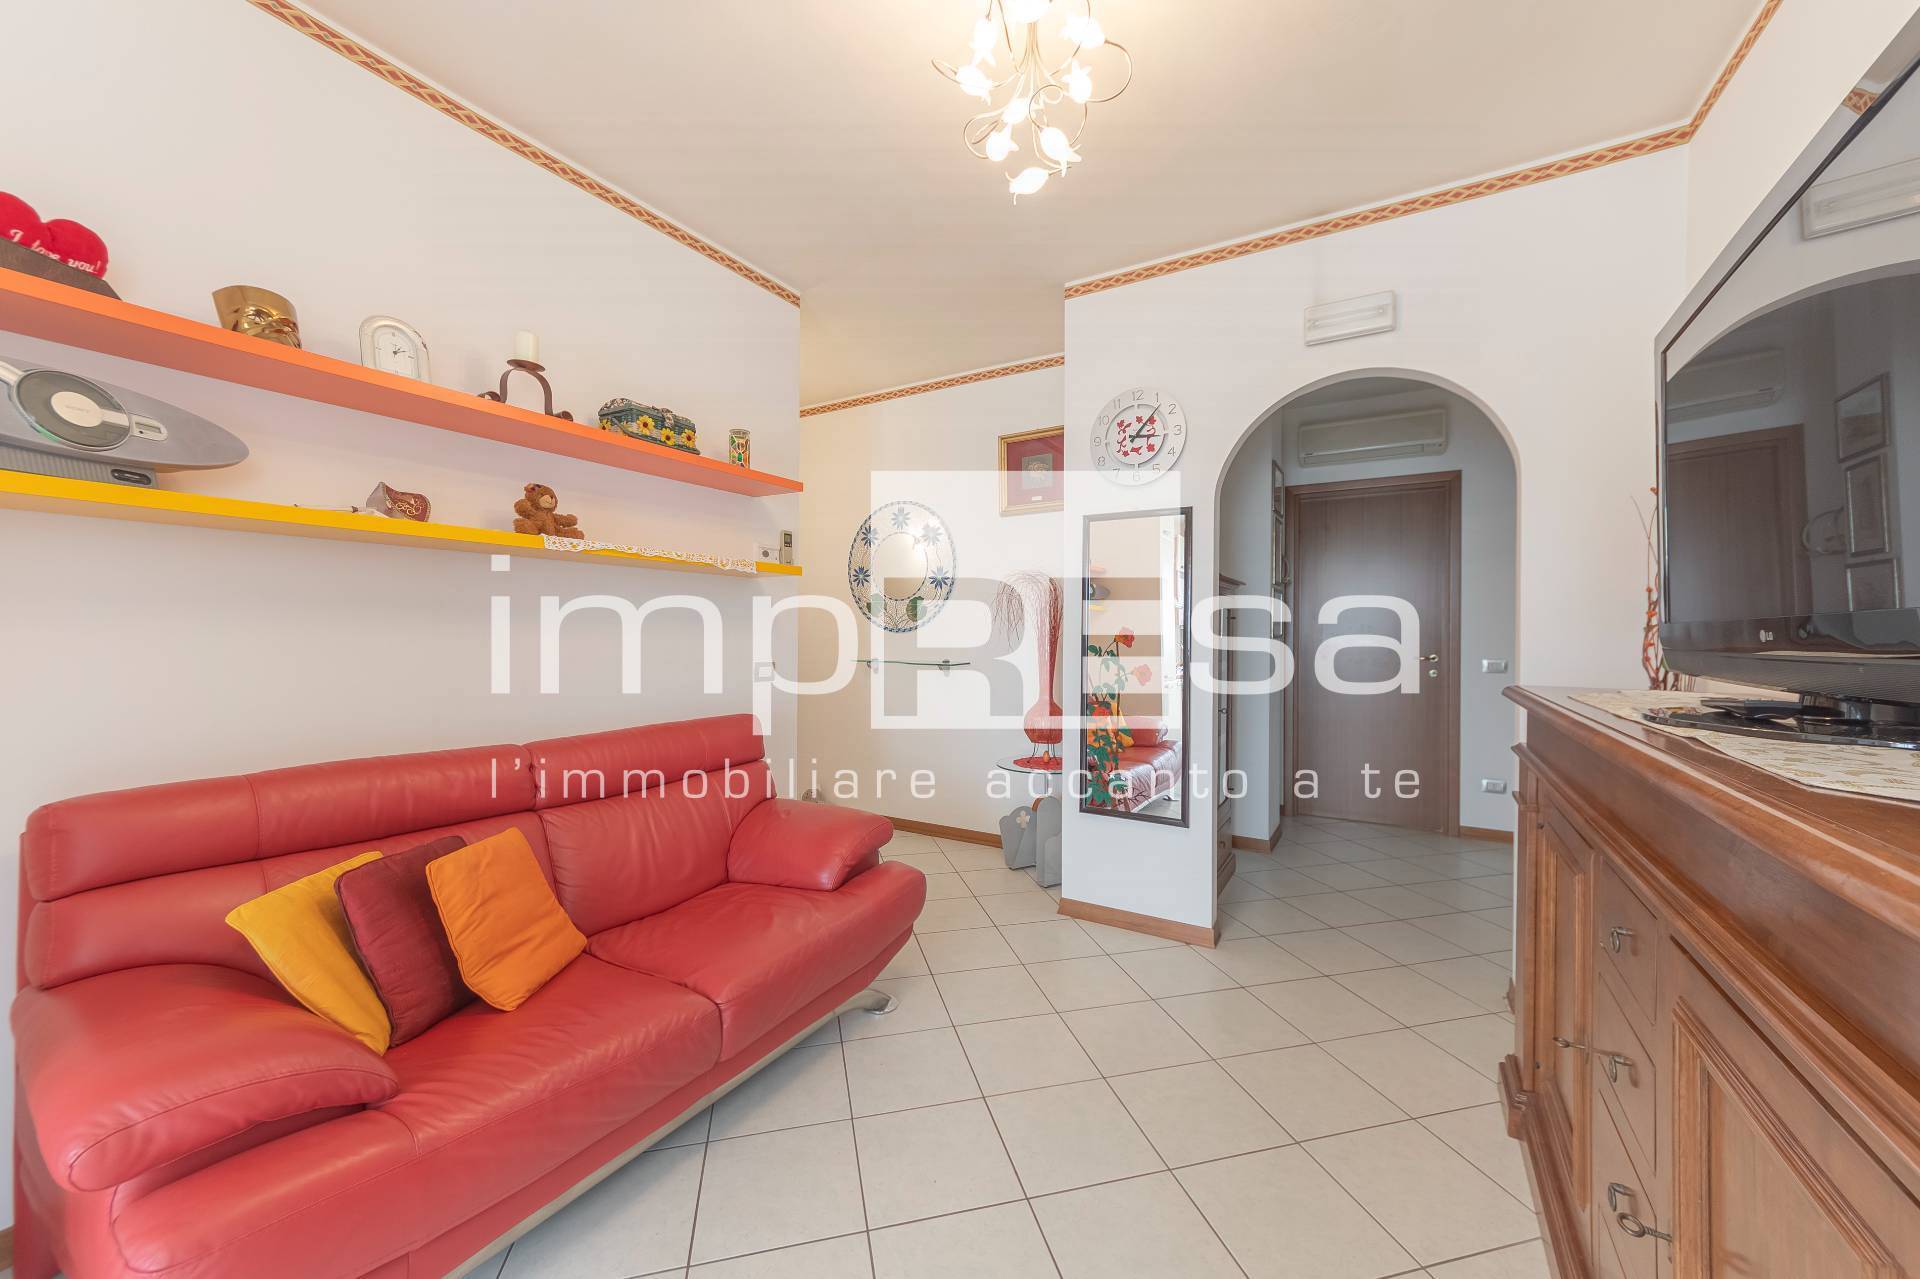 Appartamento in vendita a Mira, 3 locali, prezzo € 104.000 | PortaleAgenzieImmobiliari.it